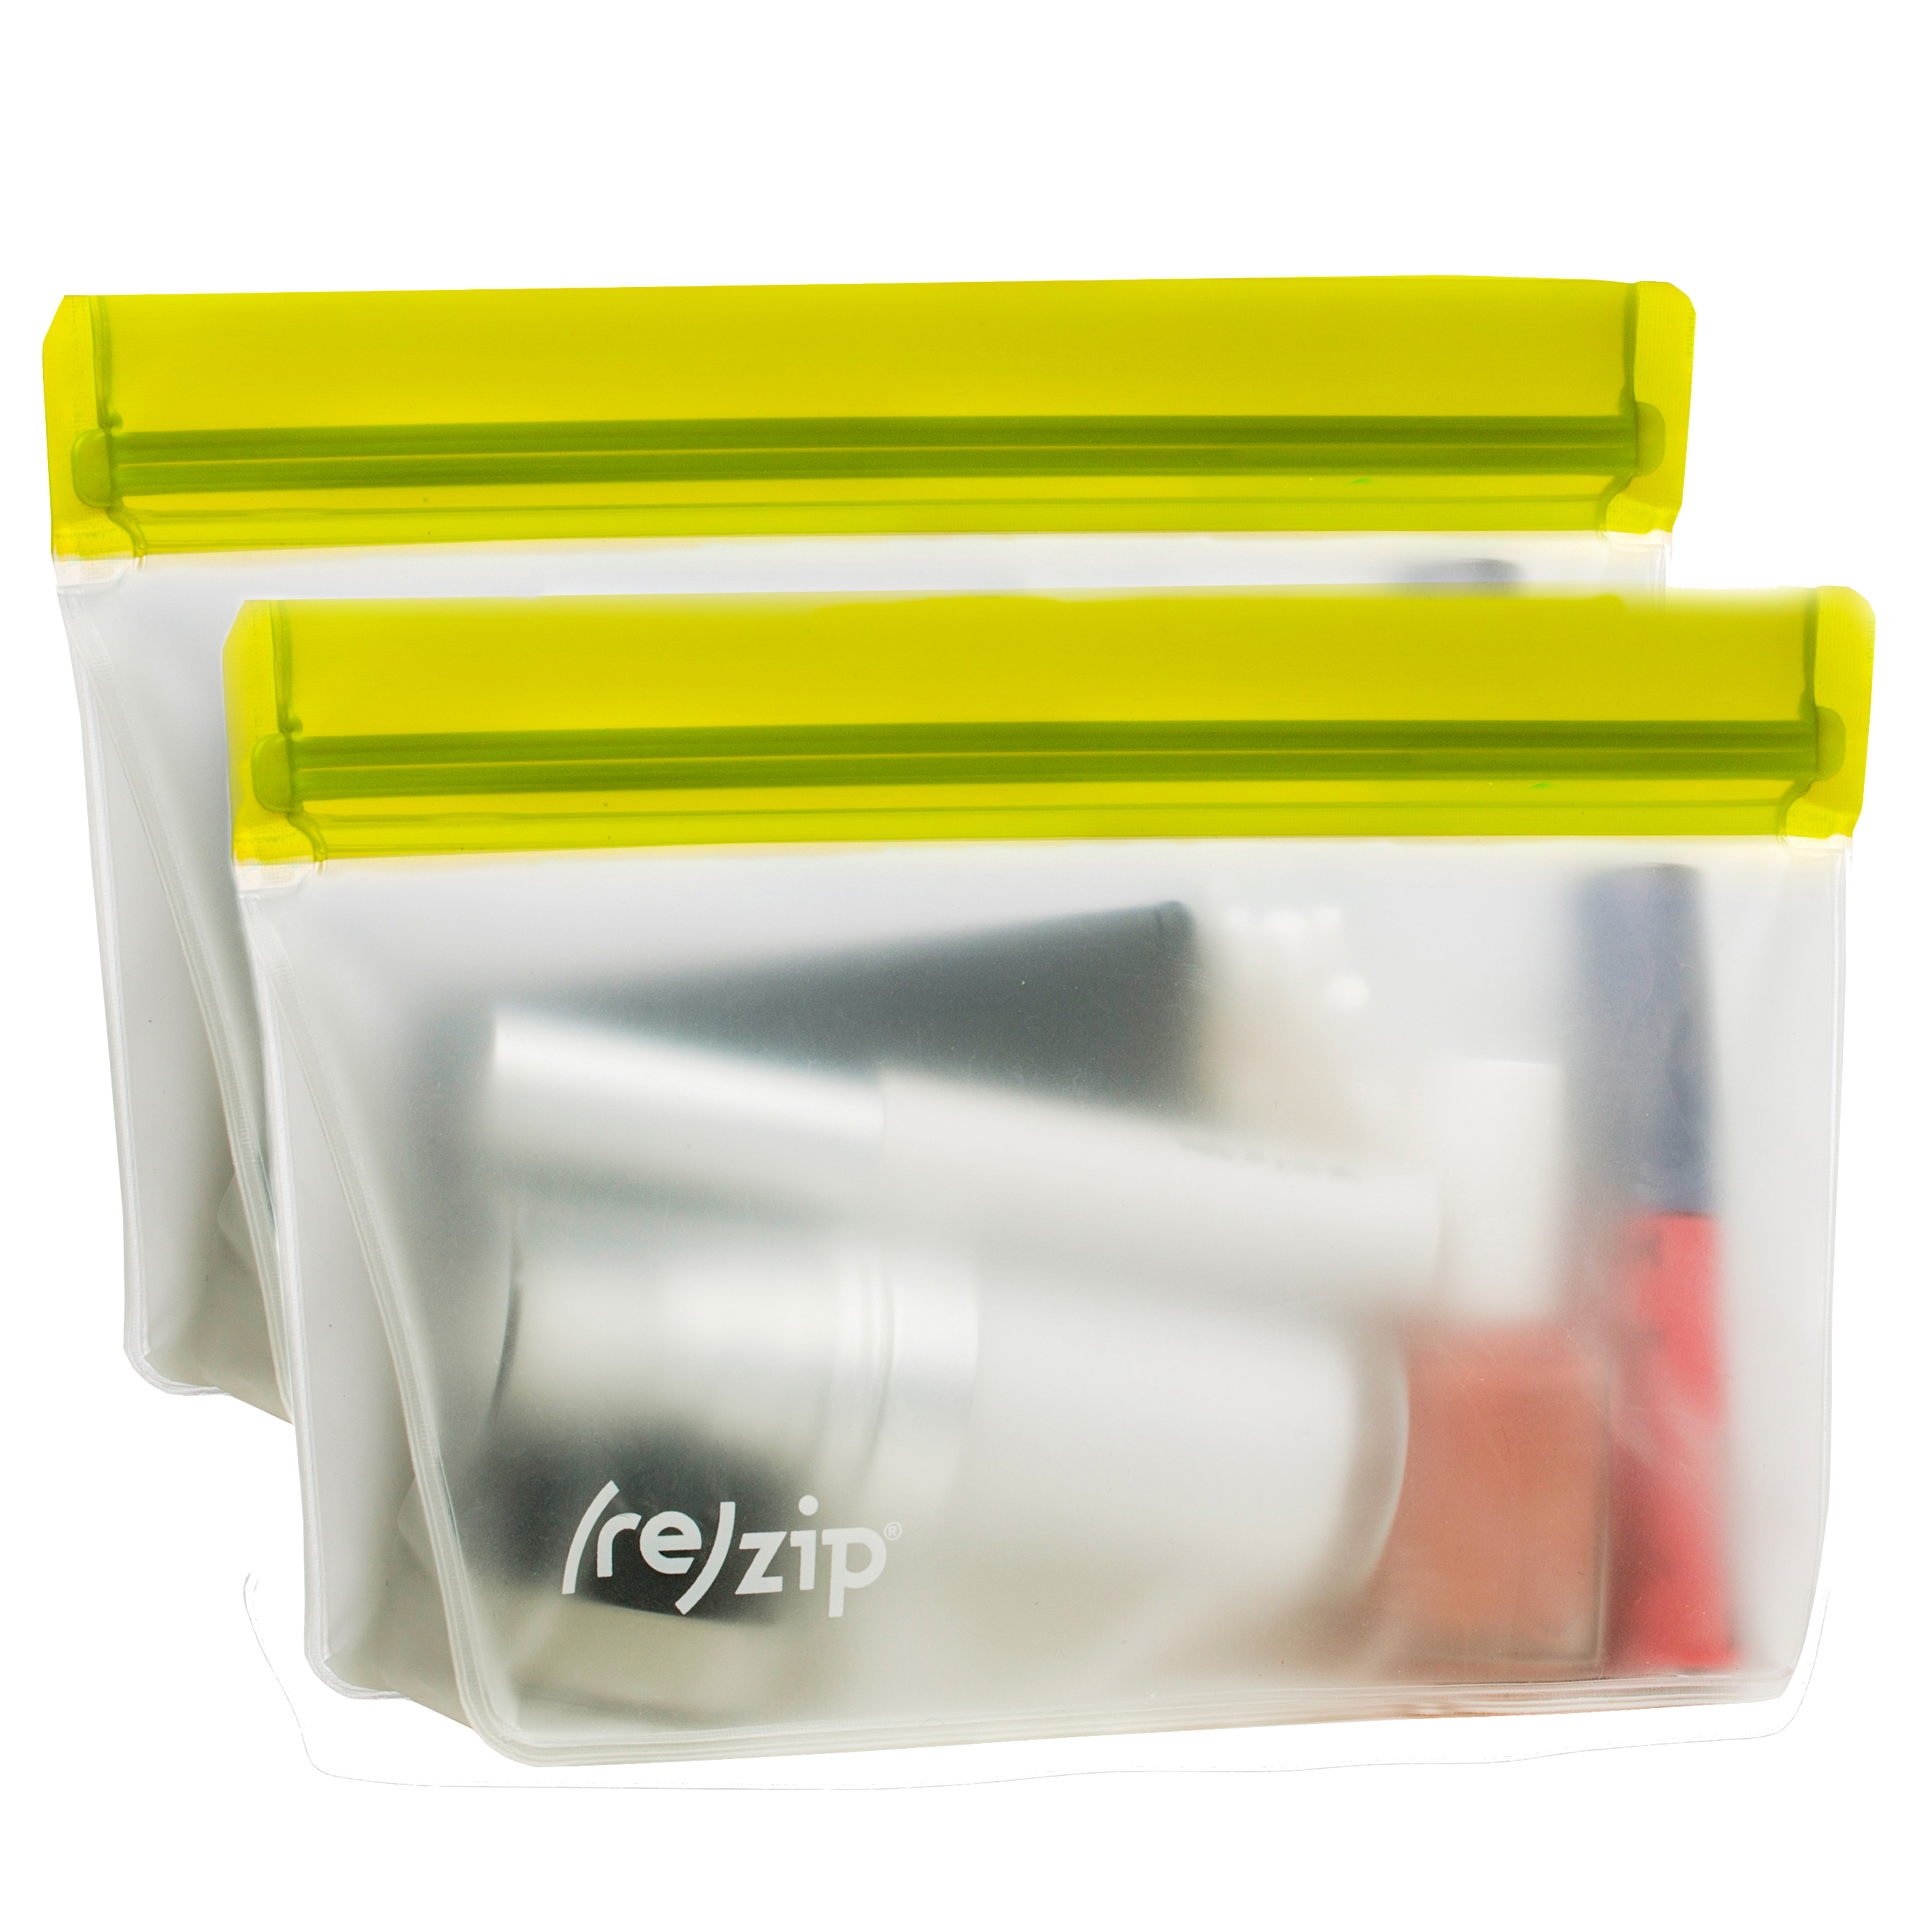 re)zip Deluxe 8-piece Resusable Storage Bag Kit (Moss Green / Aqua